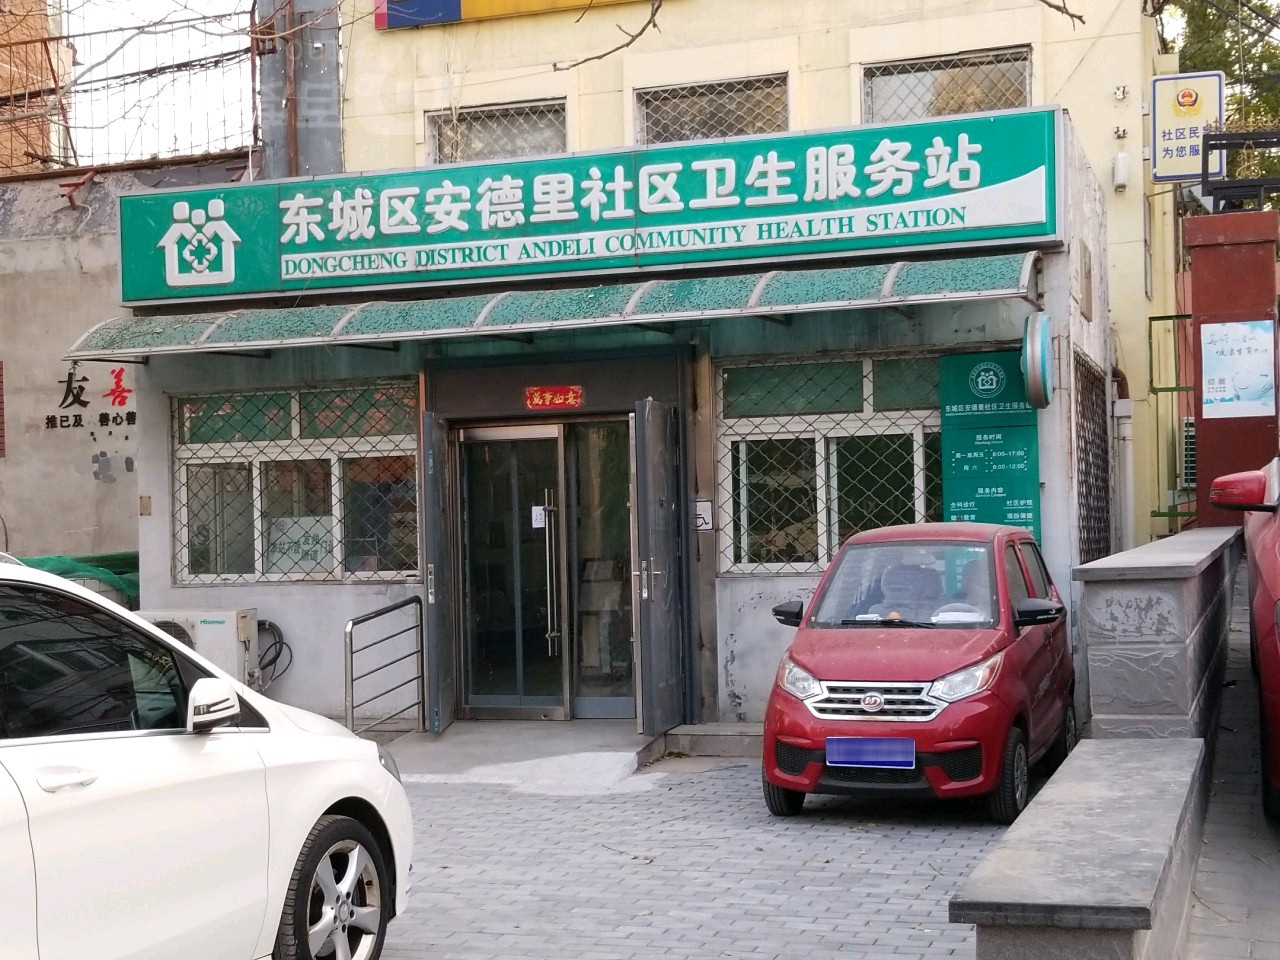 标签:医疗社区卫生服务中心医院北京市东城区和平里街道安德里社区